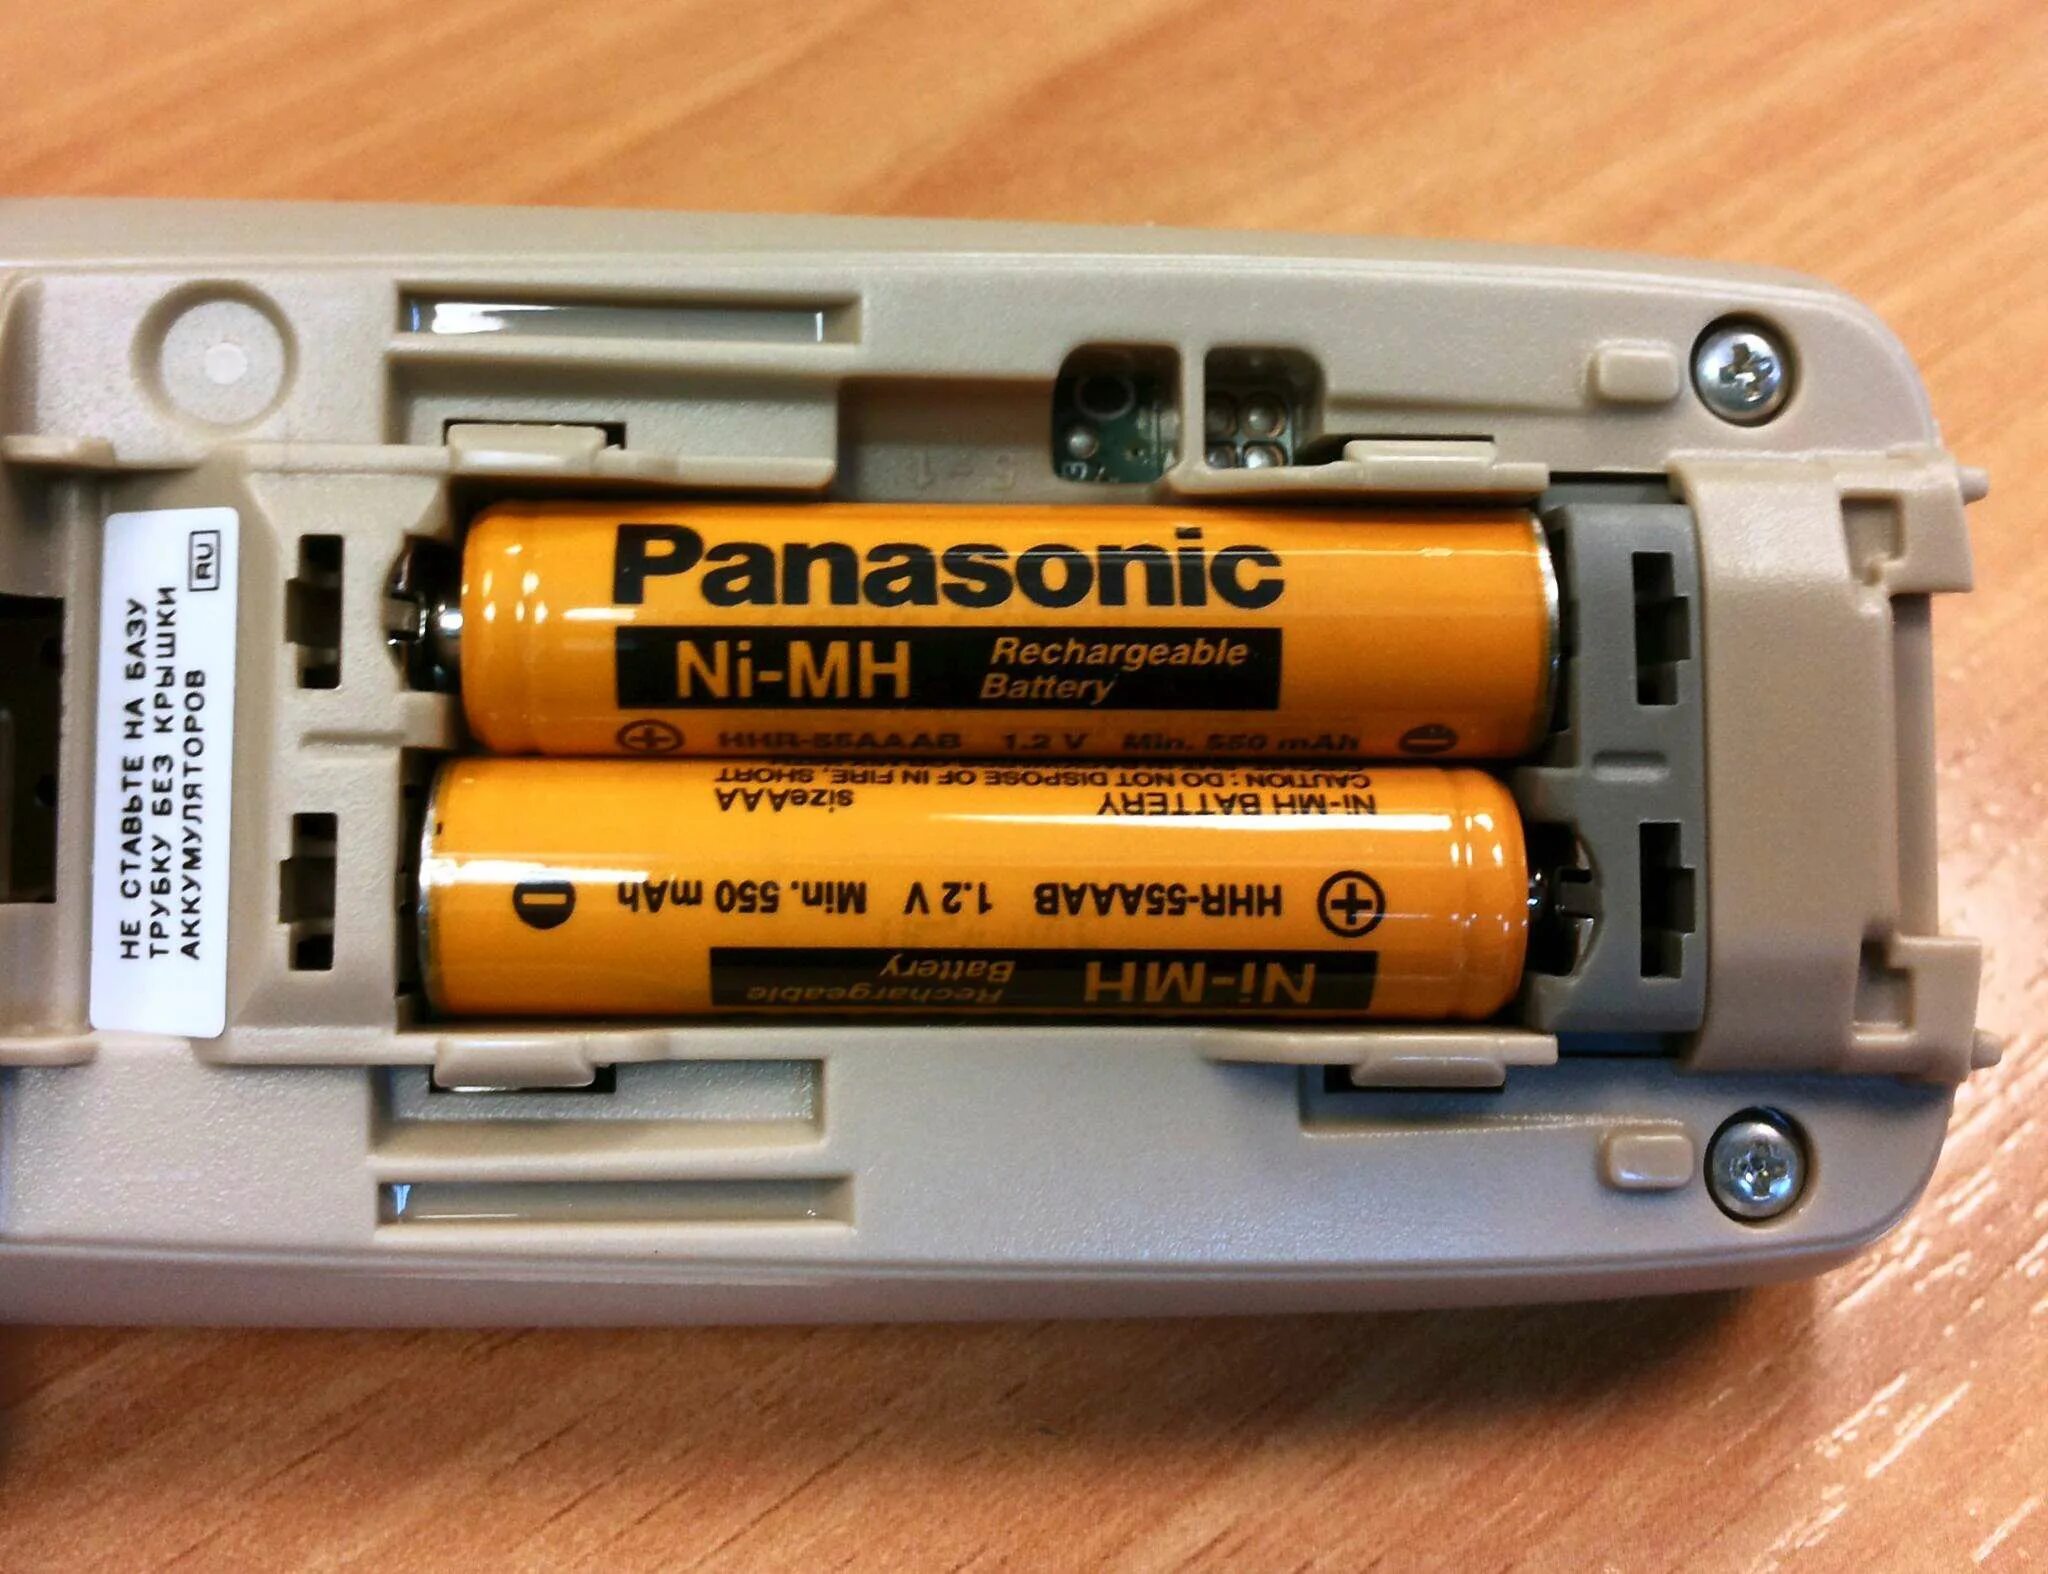 Аккумулятор надо телефон. Аккумуляторные батарейки на радиотелефон Панасоник. Батарейки для радиотелефона Panasonic. Аккумуляторные батарейки пальчиковые для радиотелефона Панасоник. Батарейки Панасоник для телефона Панасоник.